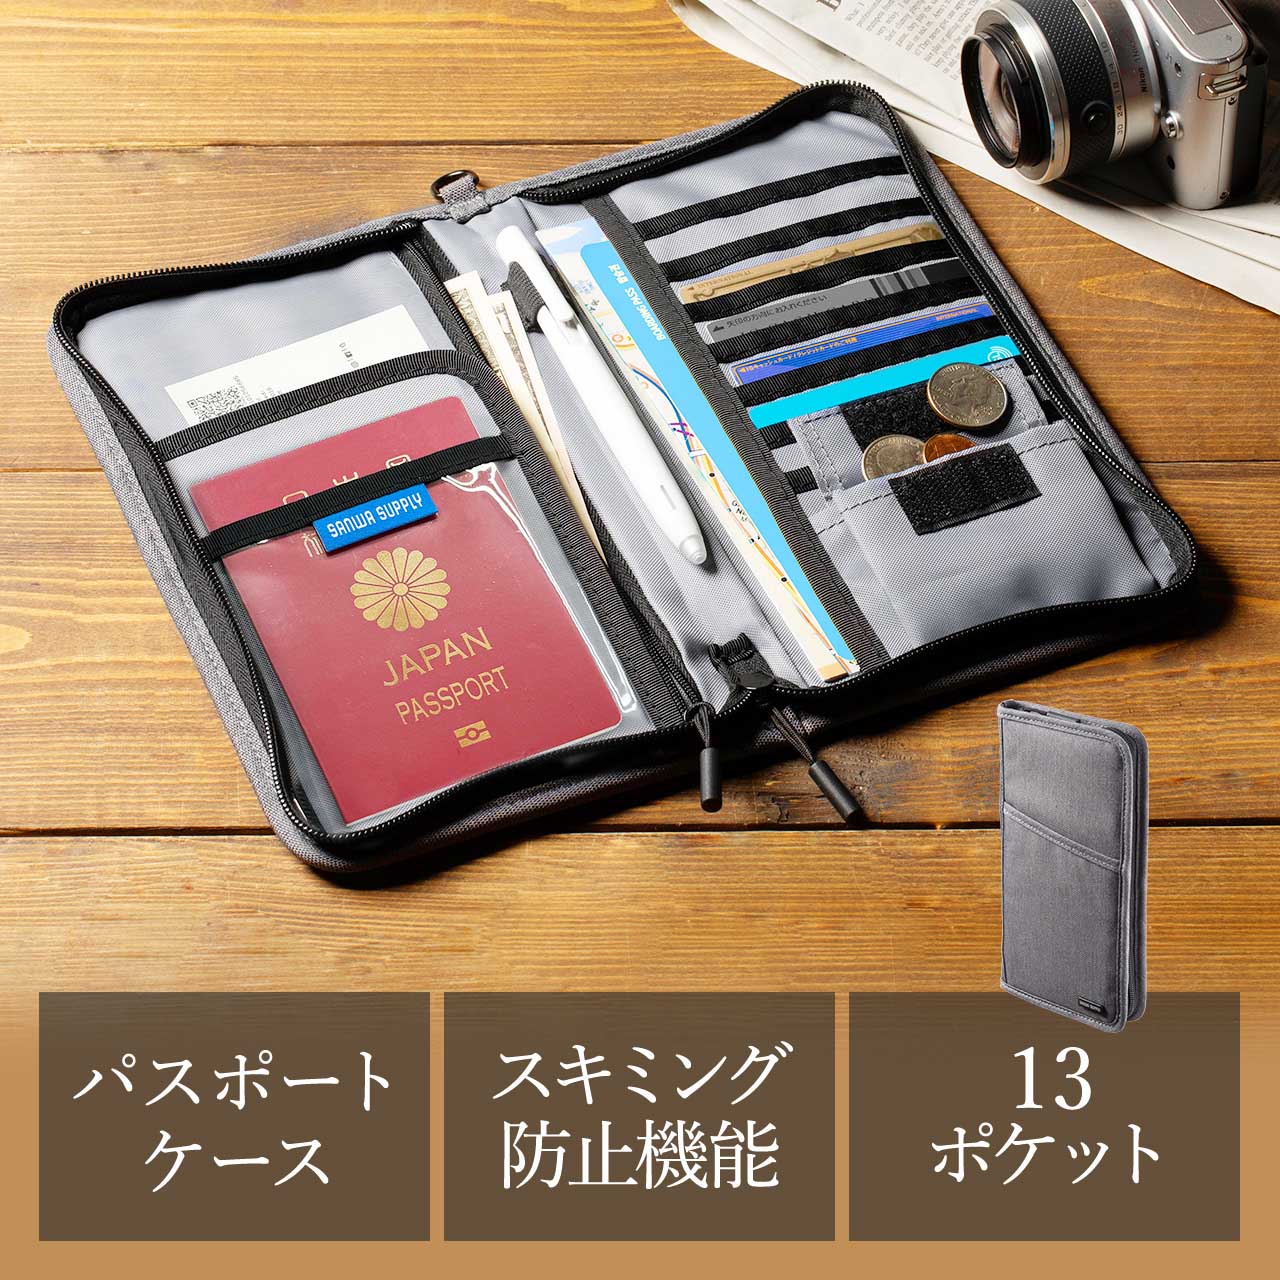 パスポートケース 旅行 スキミング防止 パスポートカバー 軽い - 生活雑貨